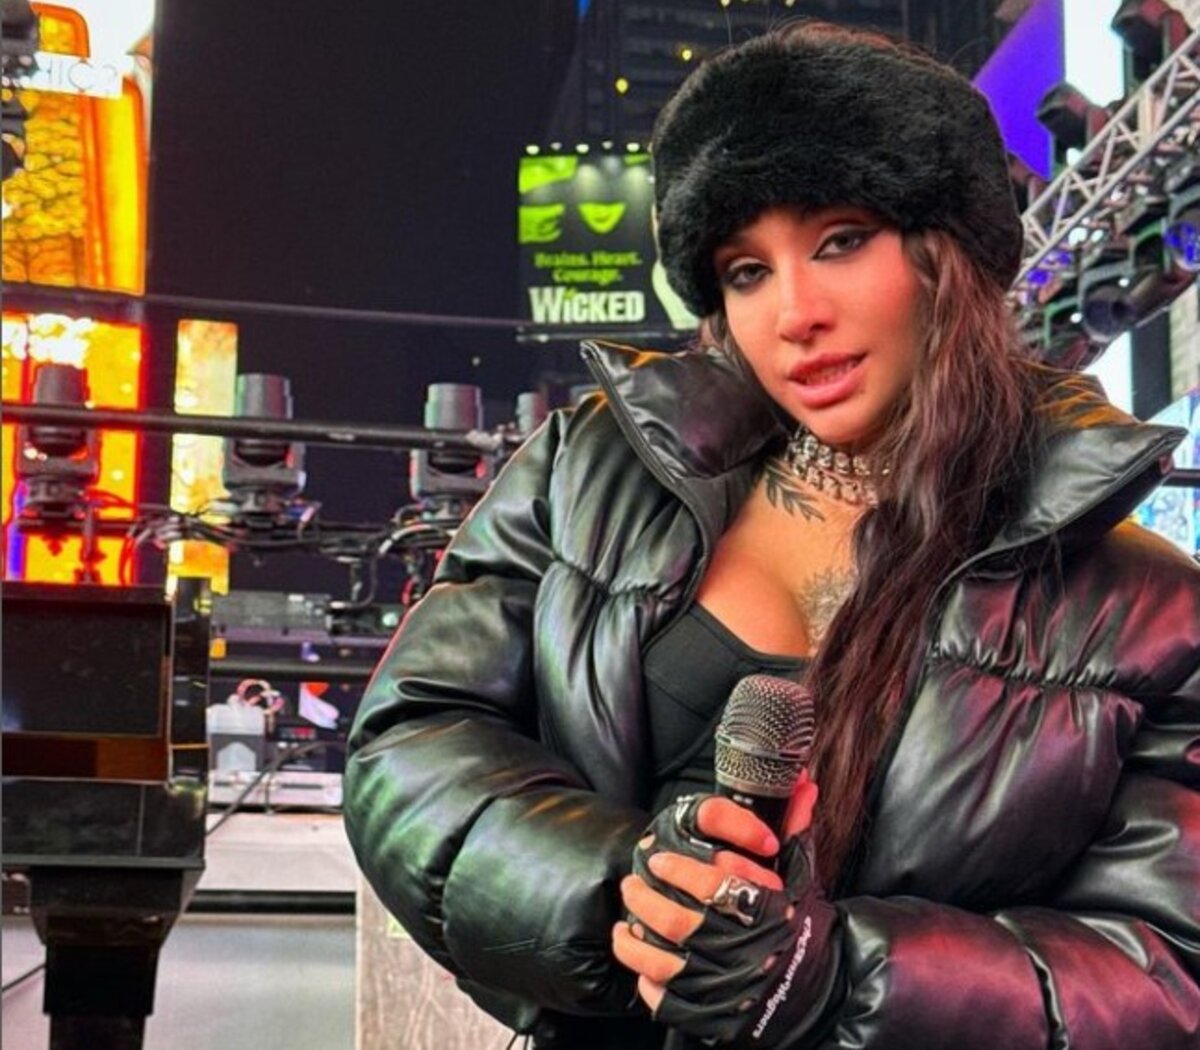 Maria Becerra cantará en el Times Square - Diario Hoy En la noticia